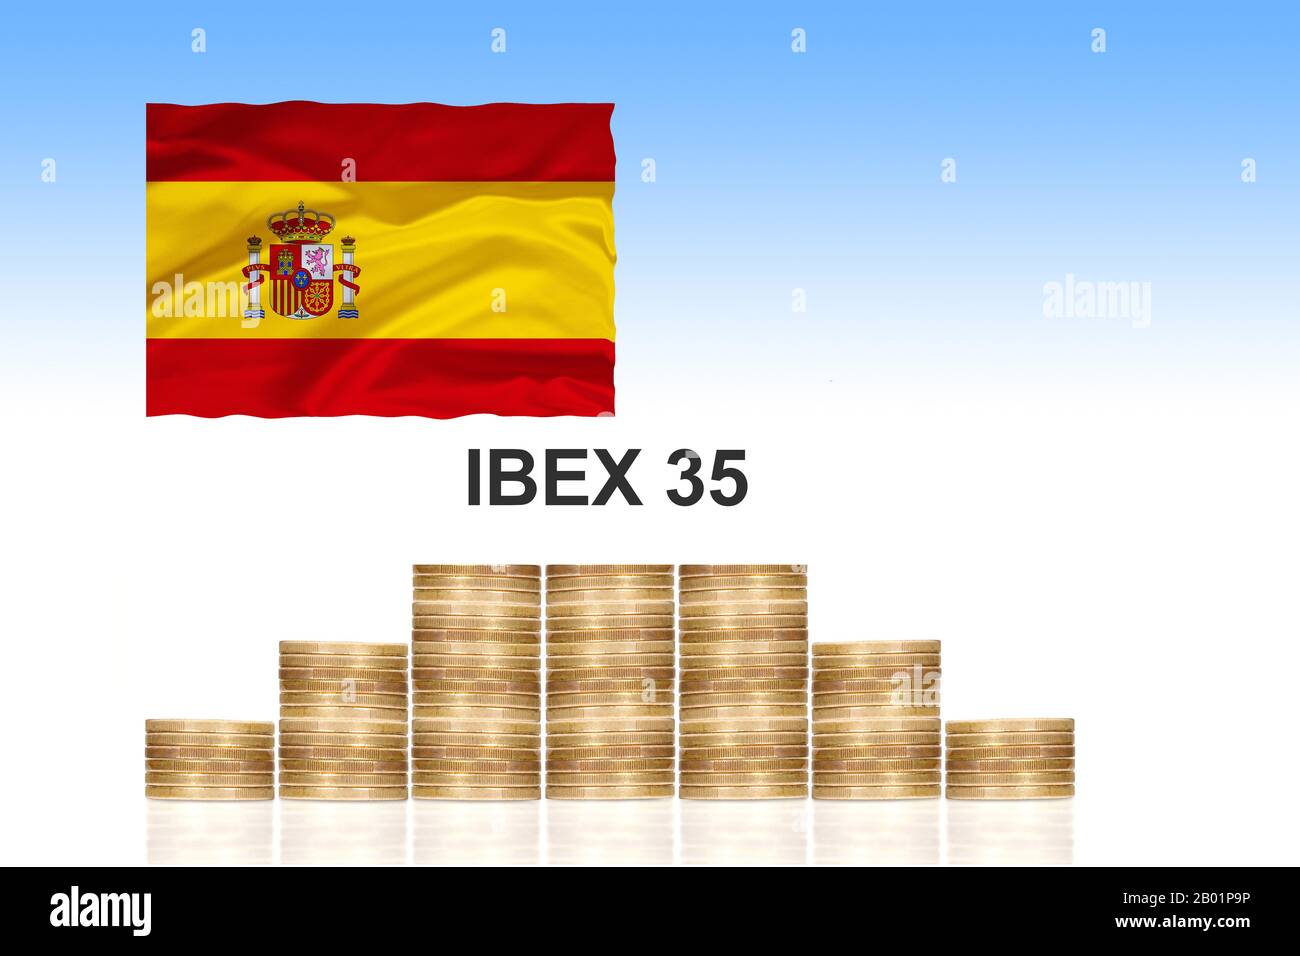 Ibex 35, bolsa de Madrid, con monedas en euros apiladas y bandera española, compuesta, España Foto de stock